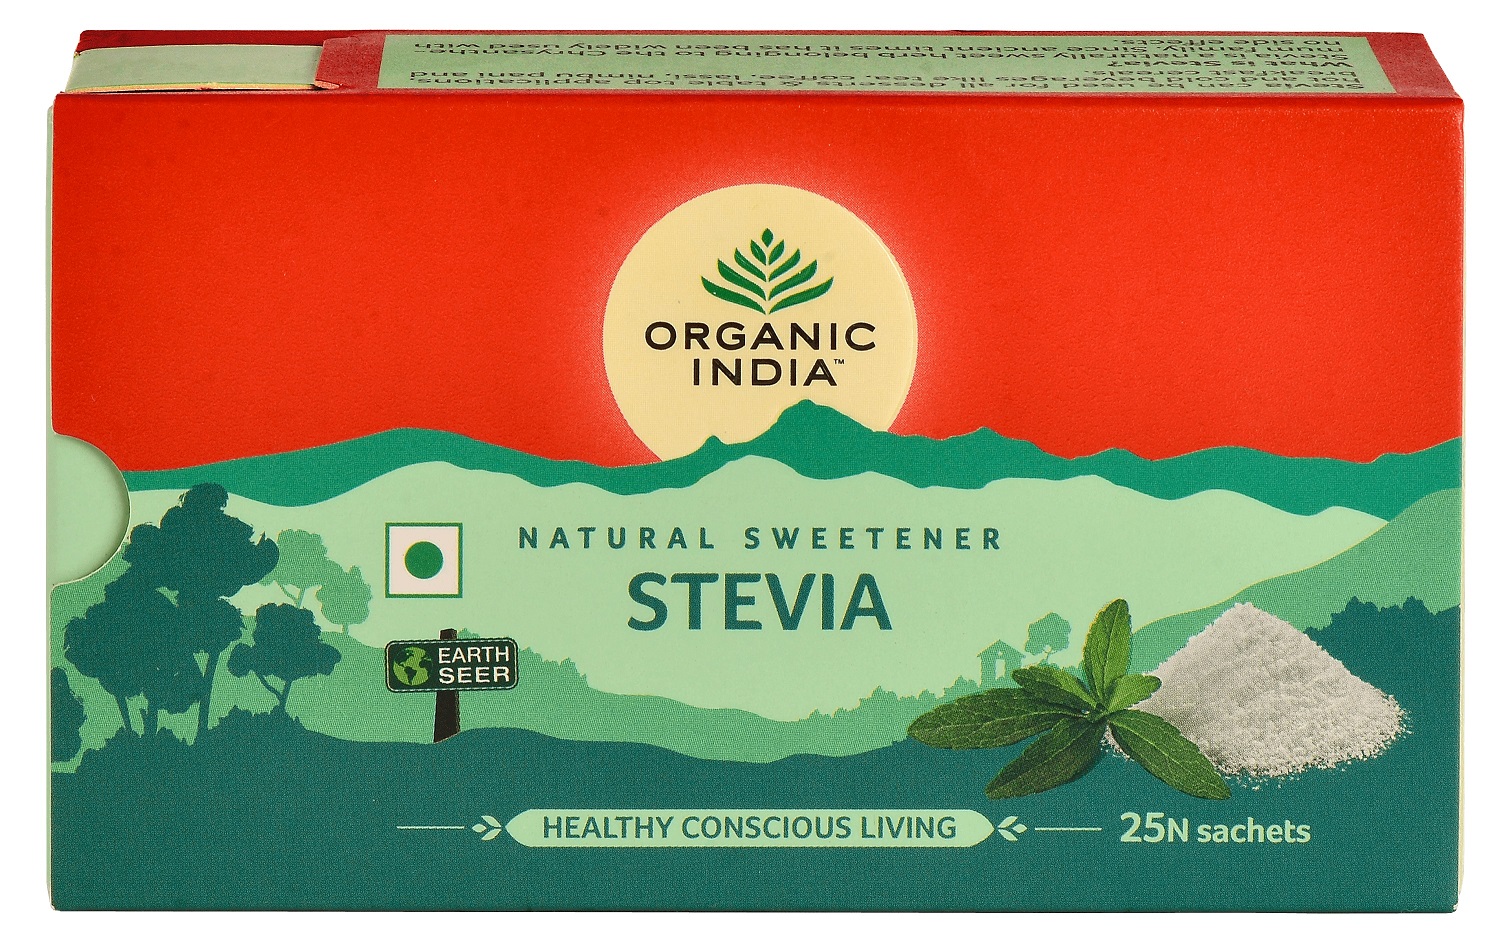 Stevia pudra Organic India (25 plicuri) – 25 g driedfruits.ro/ Zahar & Indulcitori Naturali